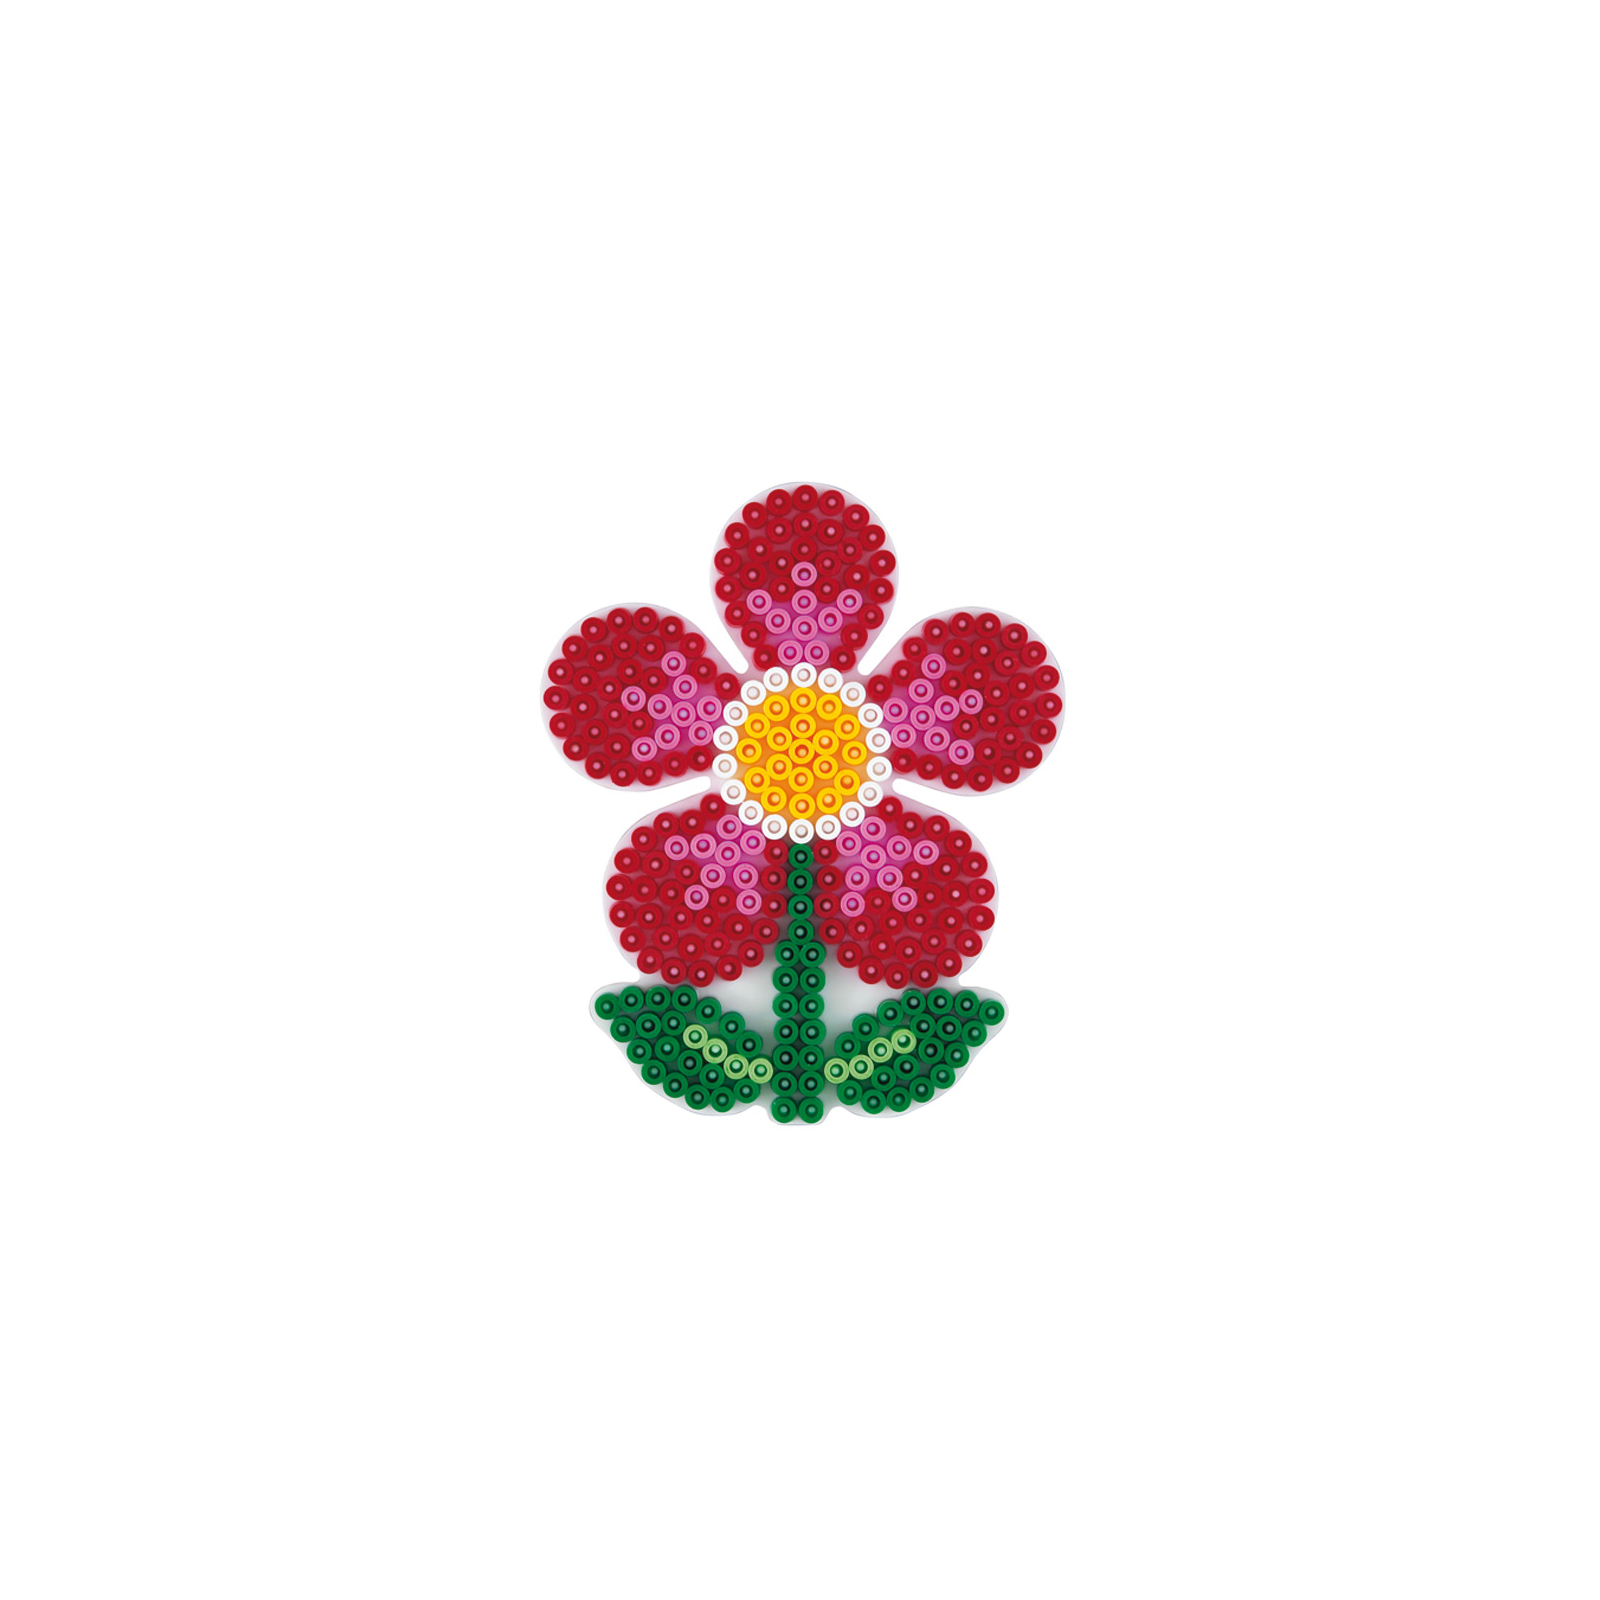 Набор для творчества Hama поле для Midi, цветок (299) изображение 2